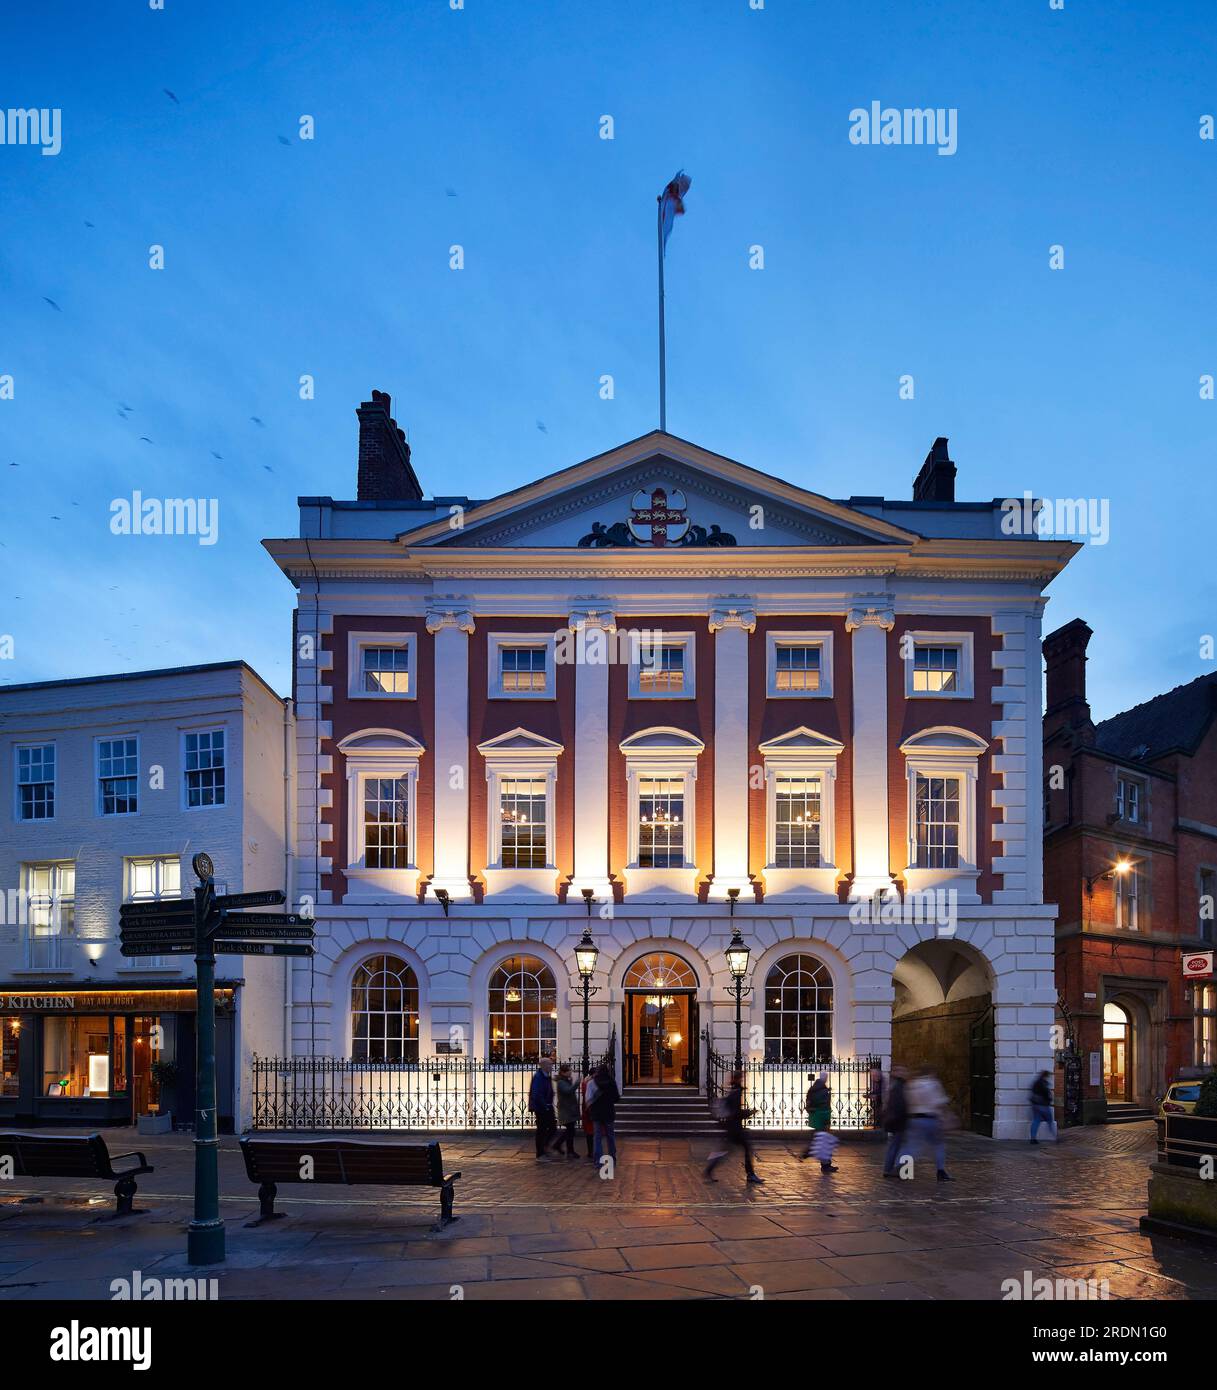 Beleuchtetes Gebäude in der Abenddämmerung. York Mansion House, York, Großbritannien. Architekt: De Matos Ryan, 2018. Stockfoto